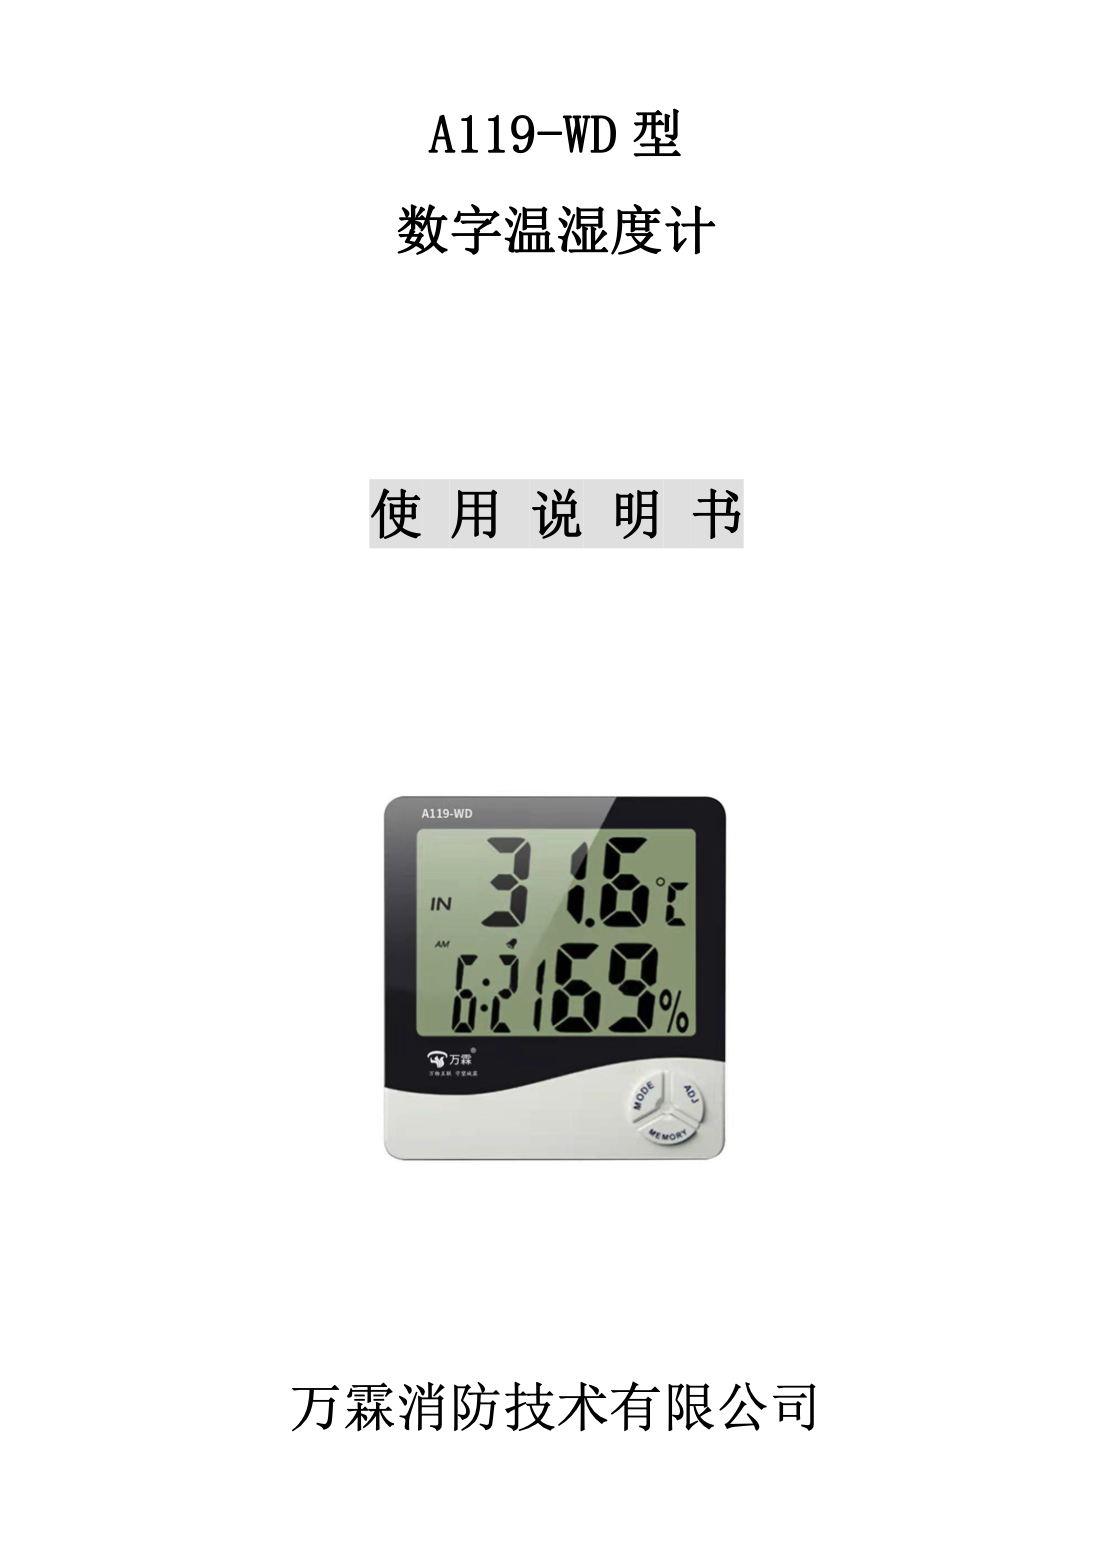 A119-WD 型 数字温湿度计使用说明